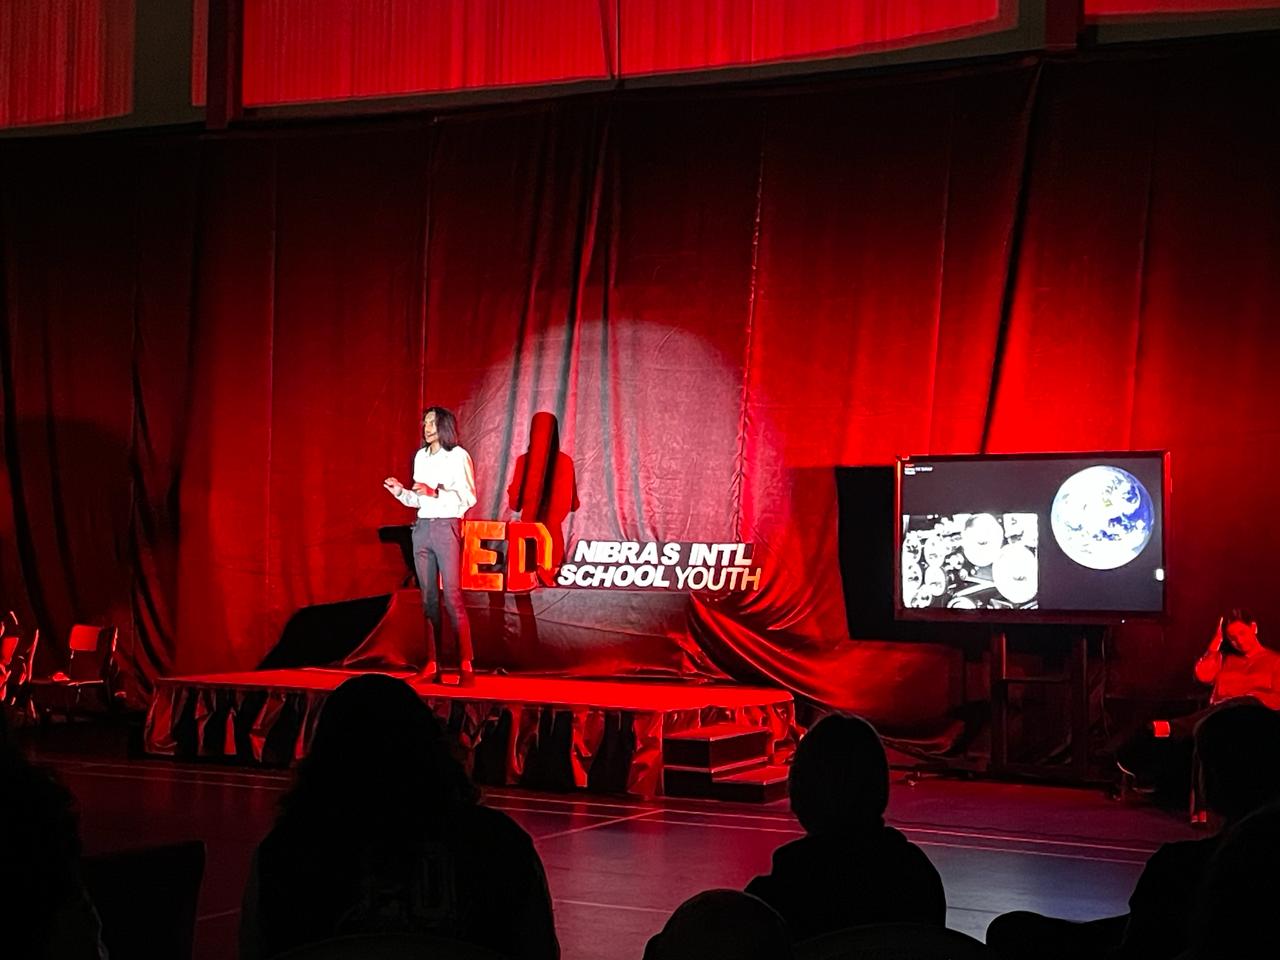 تجربة TEDx NIS: من عيون الطالب